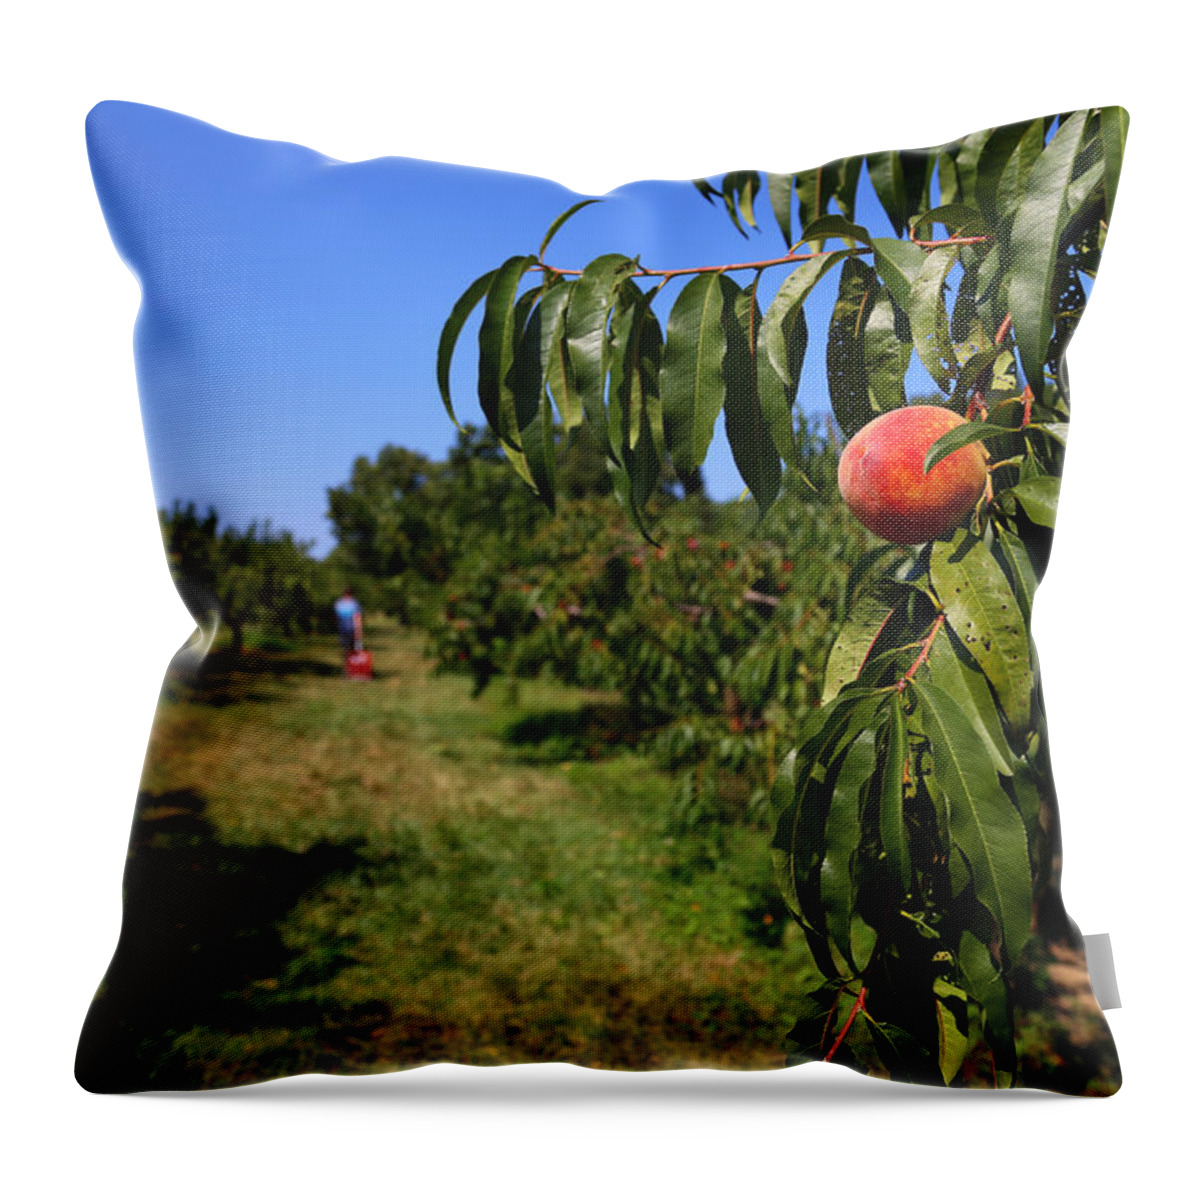 Peach Grove Throw Pillow featuring the photograph Peach Grove by Karol Livote